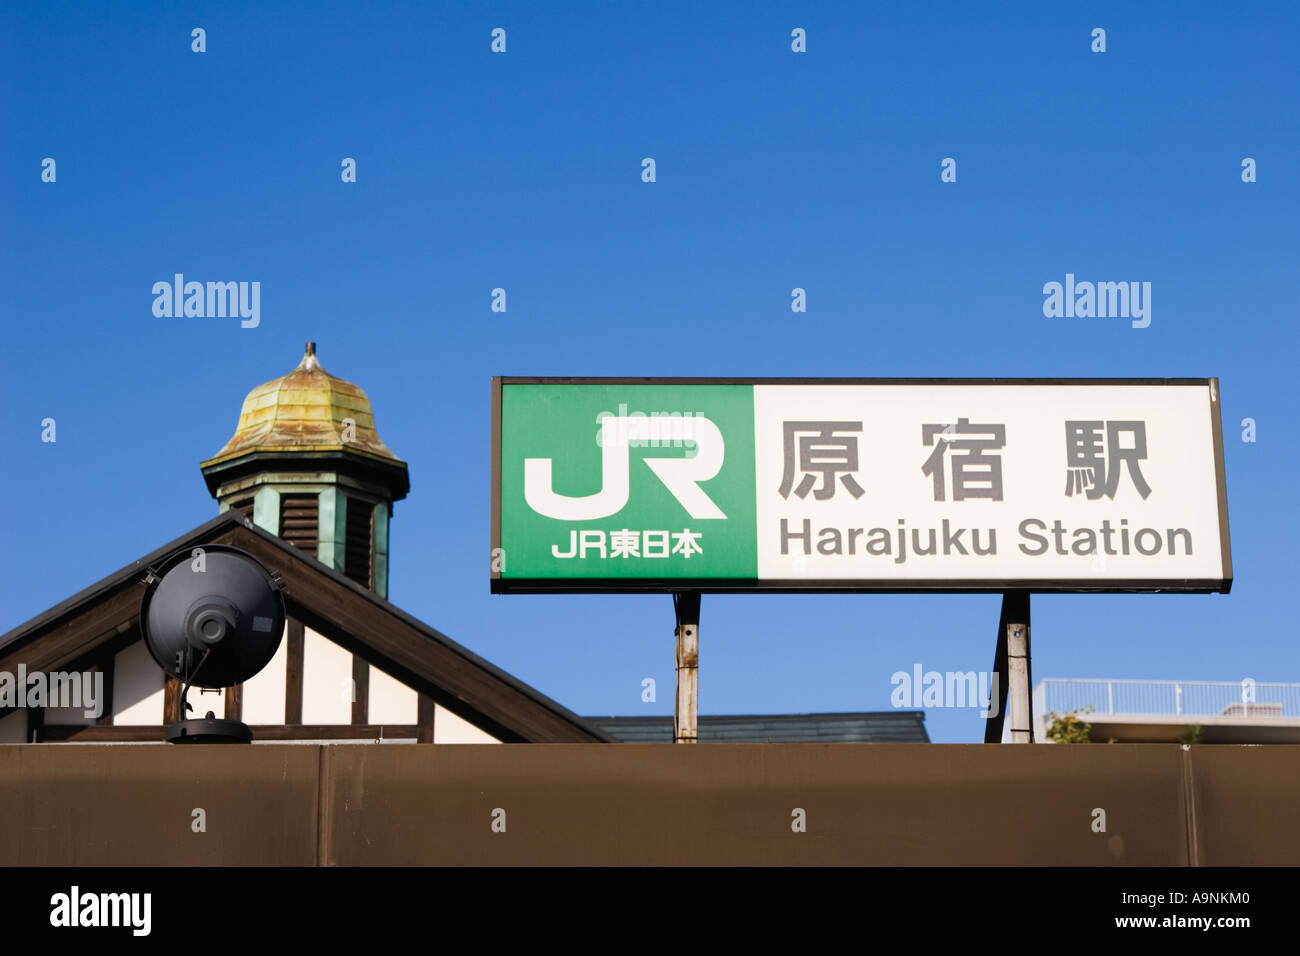 JR stazione Harajuku signage in sia giapponese i caratteri Kanji e inglese Tokyo Giappone Asia Foto Stock